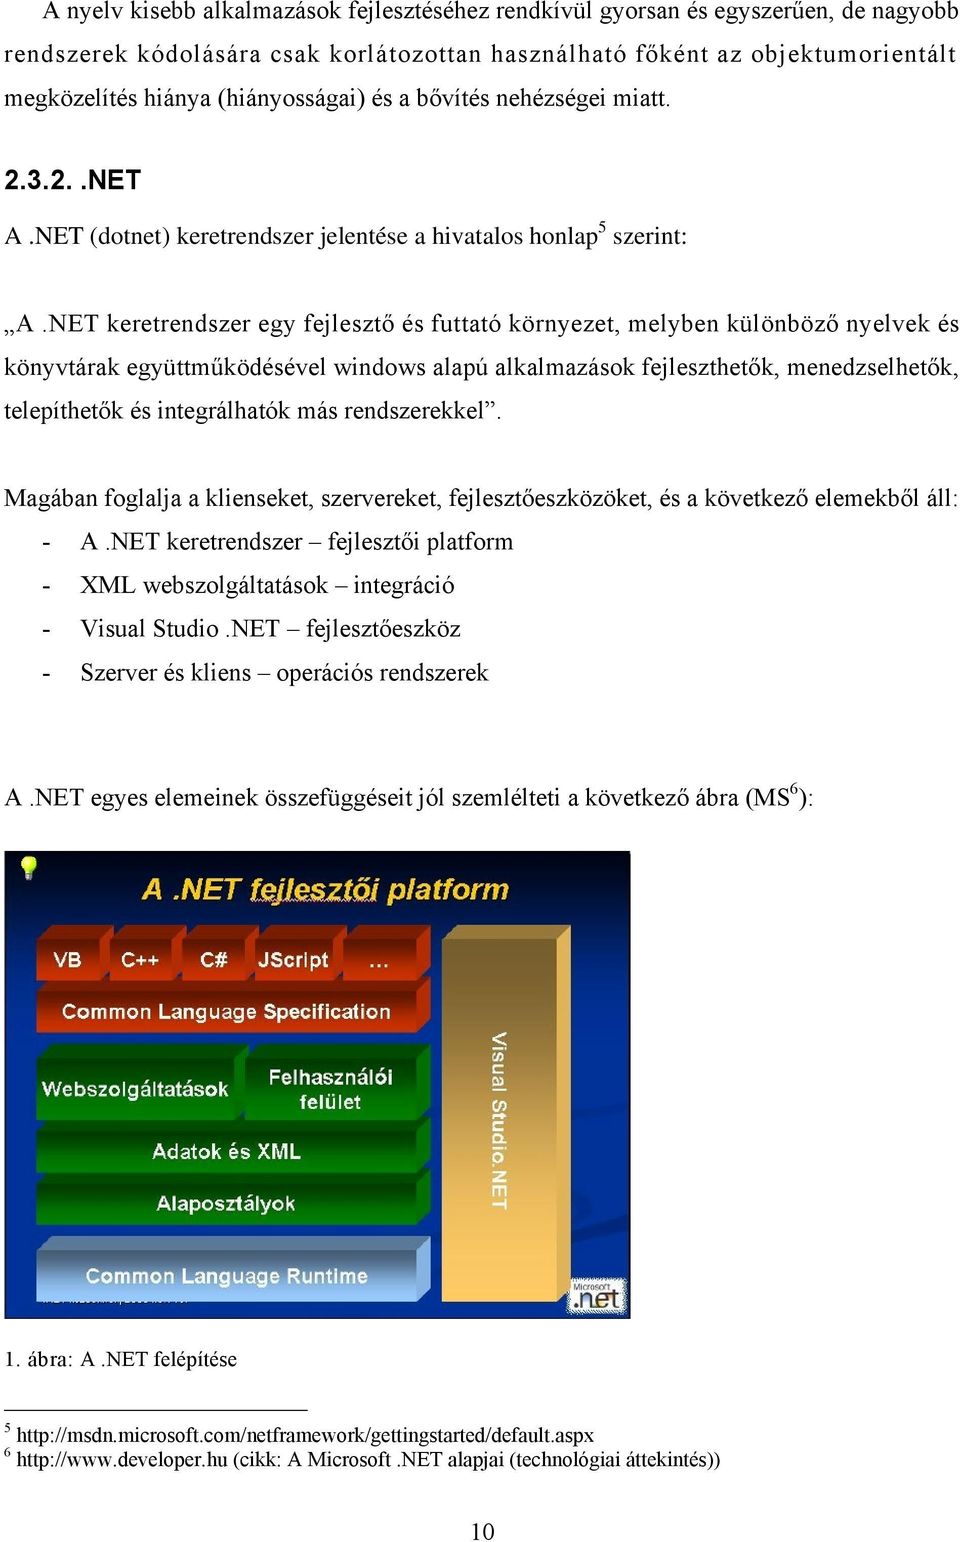 NET keretrendszer egy fejlesztő és futtató környezet, melyben különböző nyelvek és könyvtárak együttműködésével windows alapú alkalmazások fejleszthetők, menedzselhetők, telepíthetők és integrálhatók